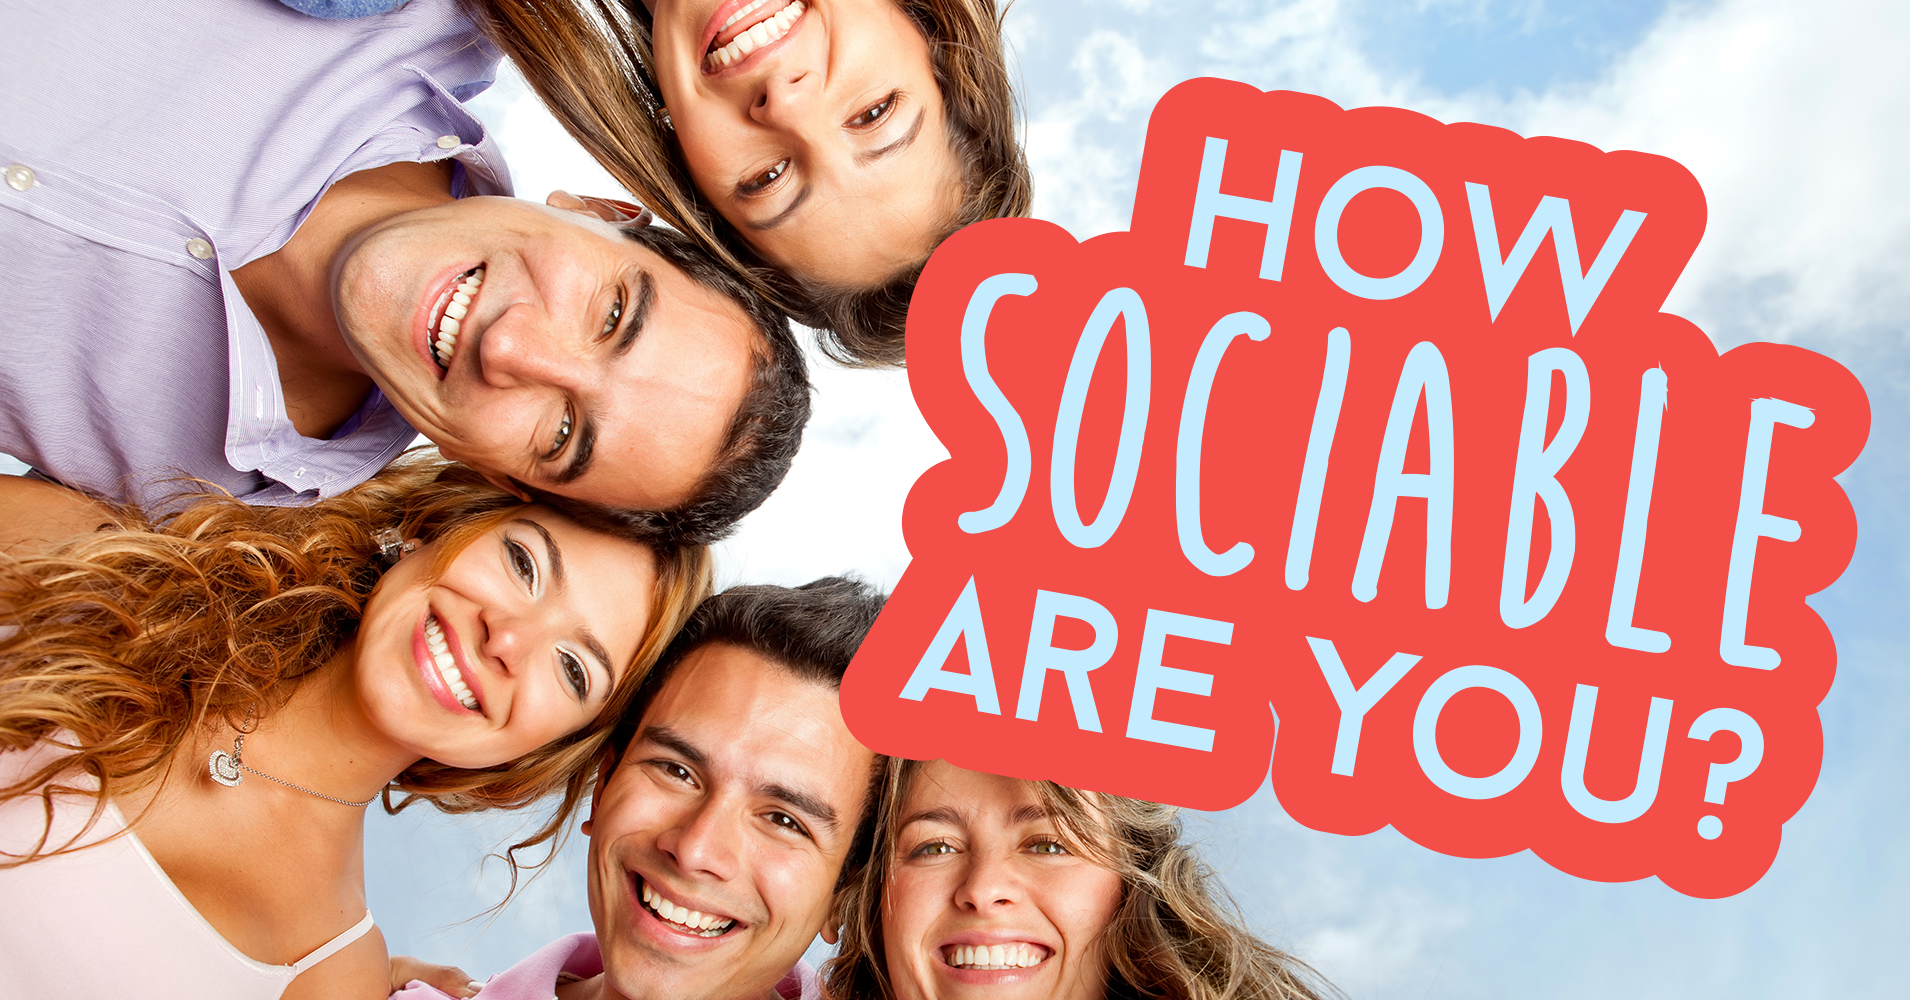 How Sociable Are You? - Quiz - Quizony.com